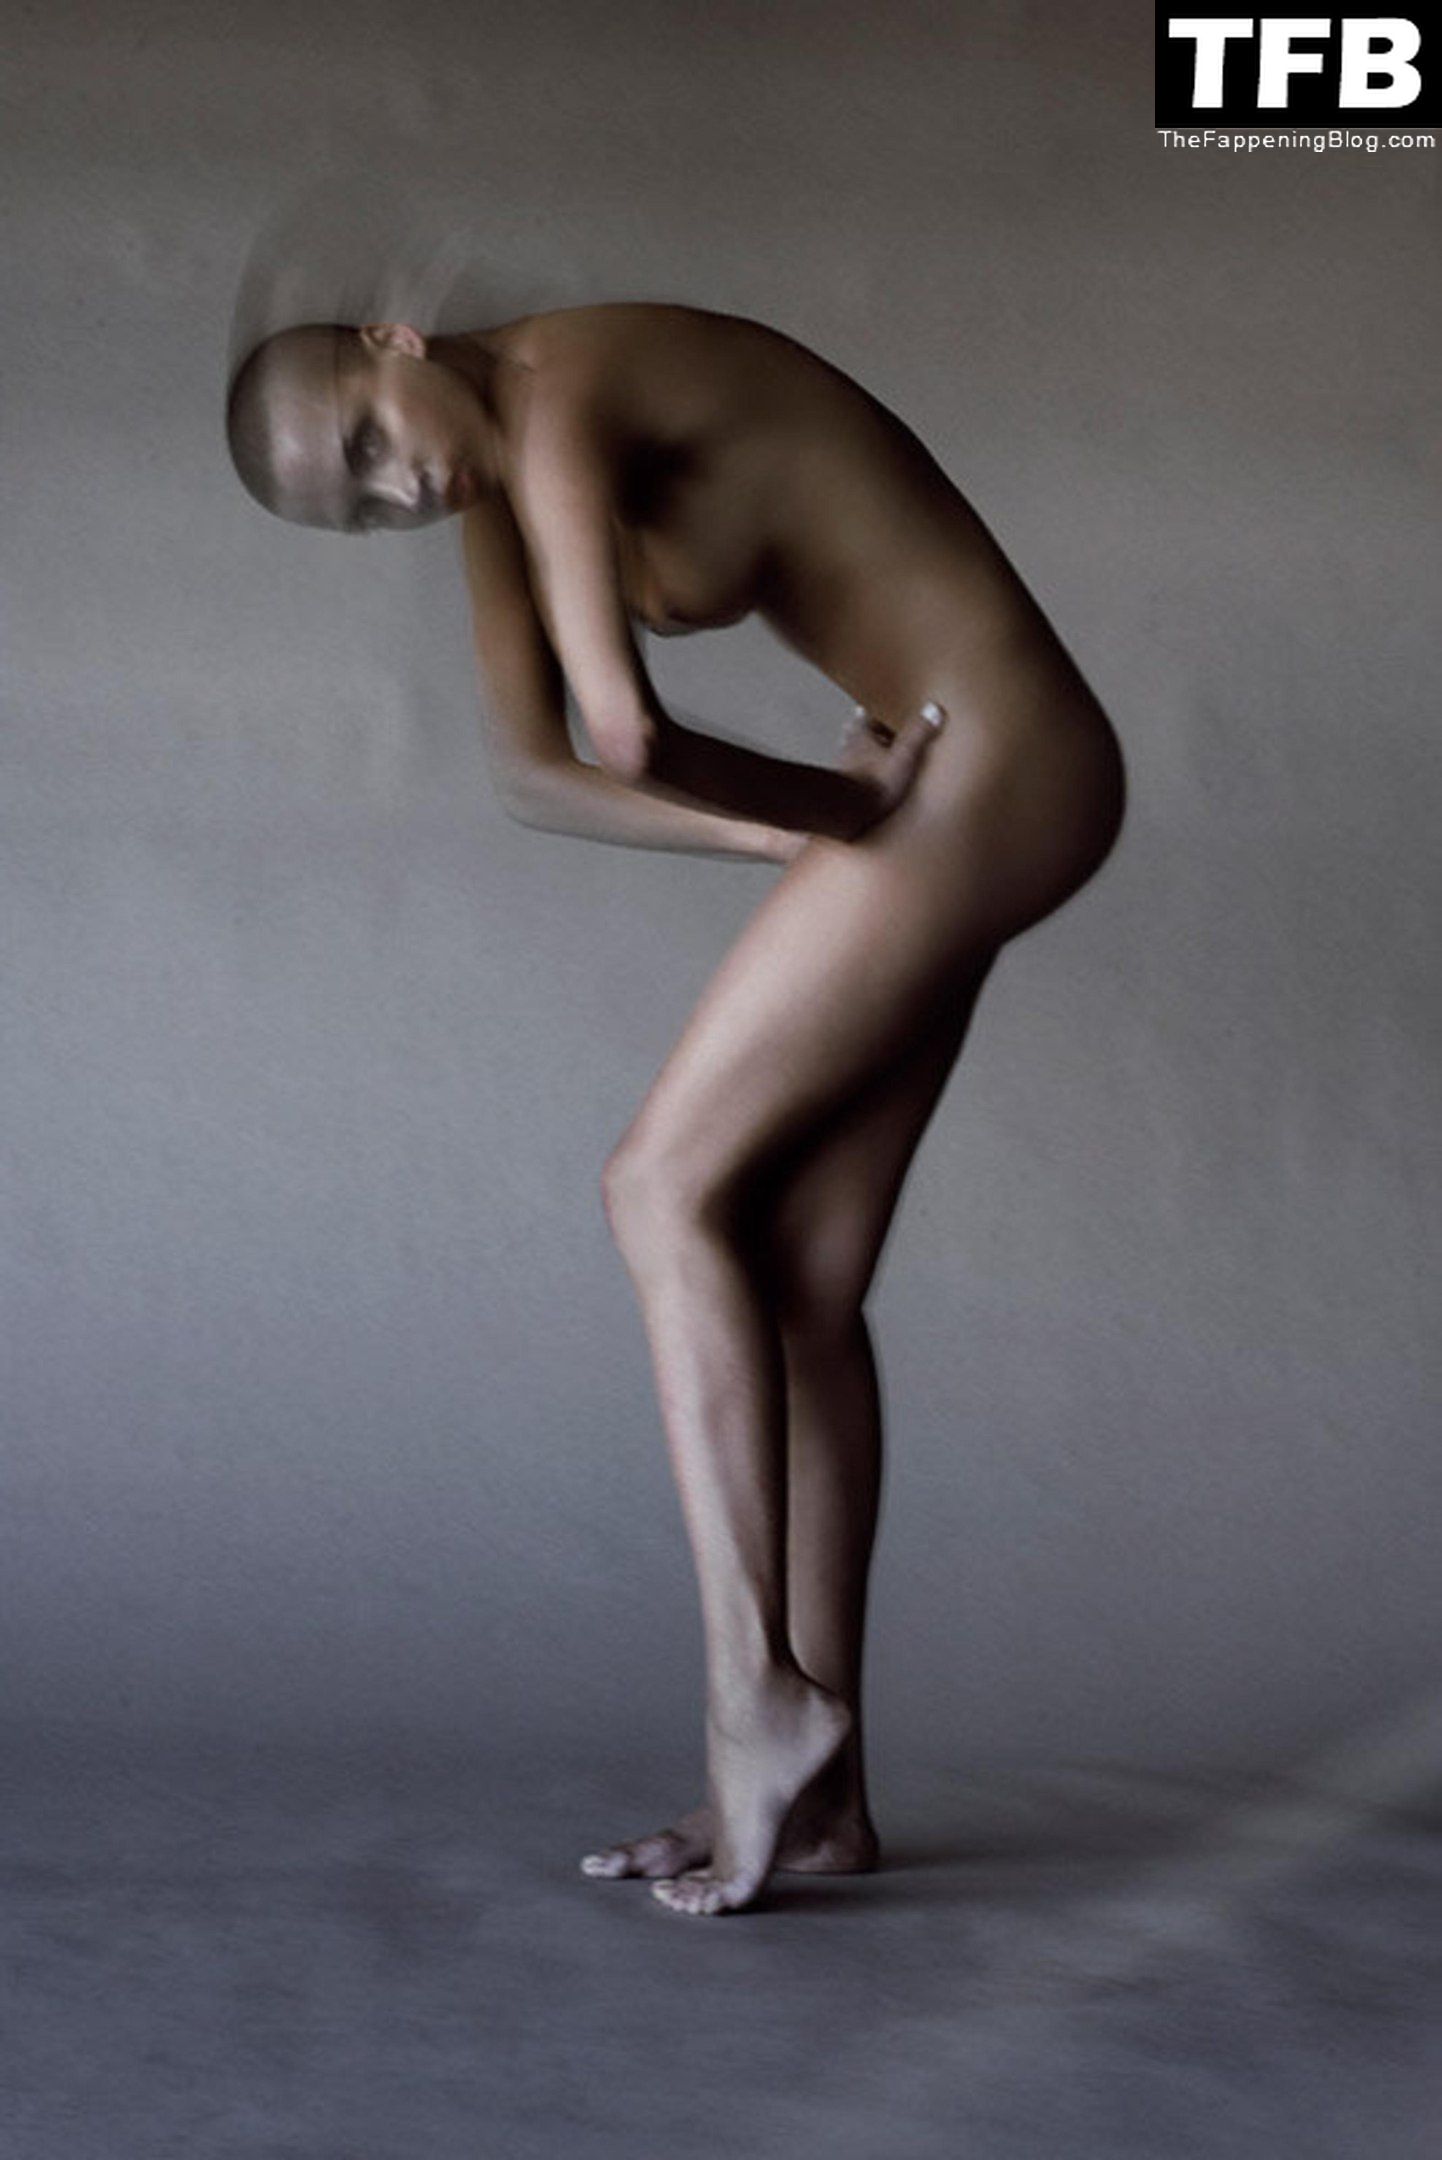 Noemie-Lenoir-Nude-Sexy-The-Fappening-Blog-3.jpg